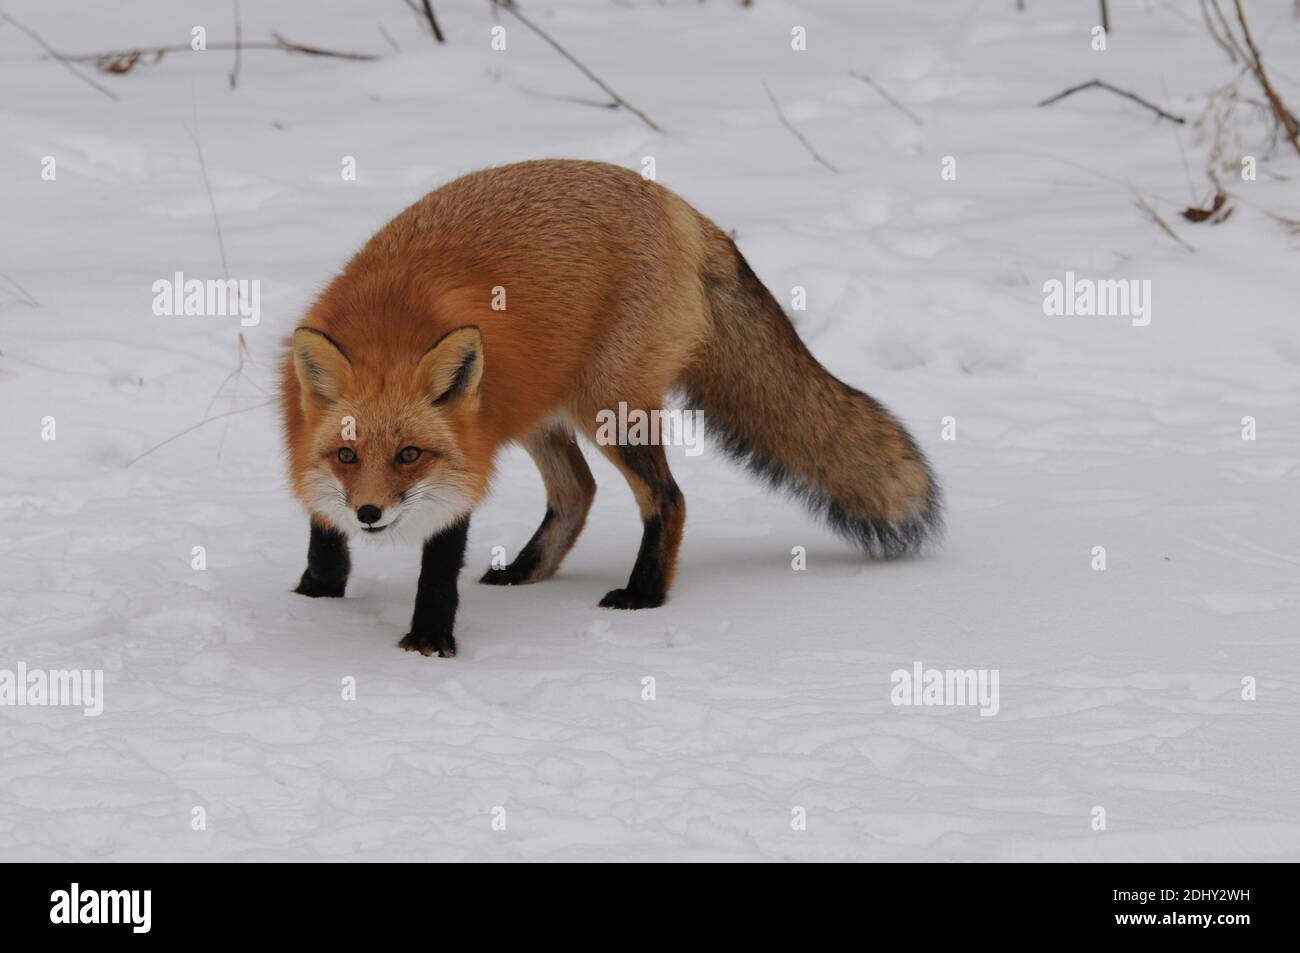 Volpe rossa guardando la macchina fotografica nella stagione invernale nel suo ambiente e habitat con fondo di neve che mostra la coda di volpe, pelliccia. Immagine FOX. Immagine. Foto Stock